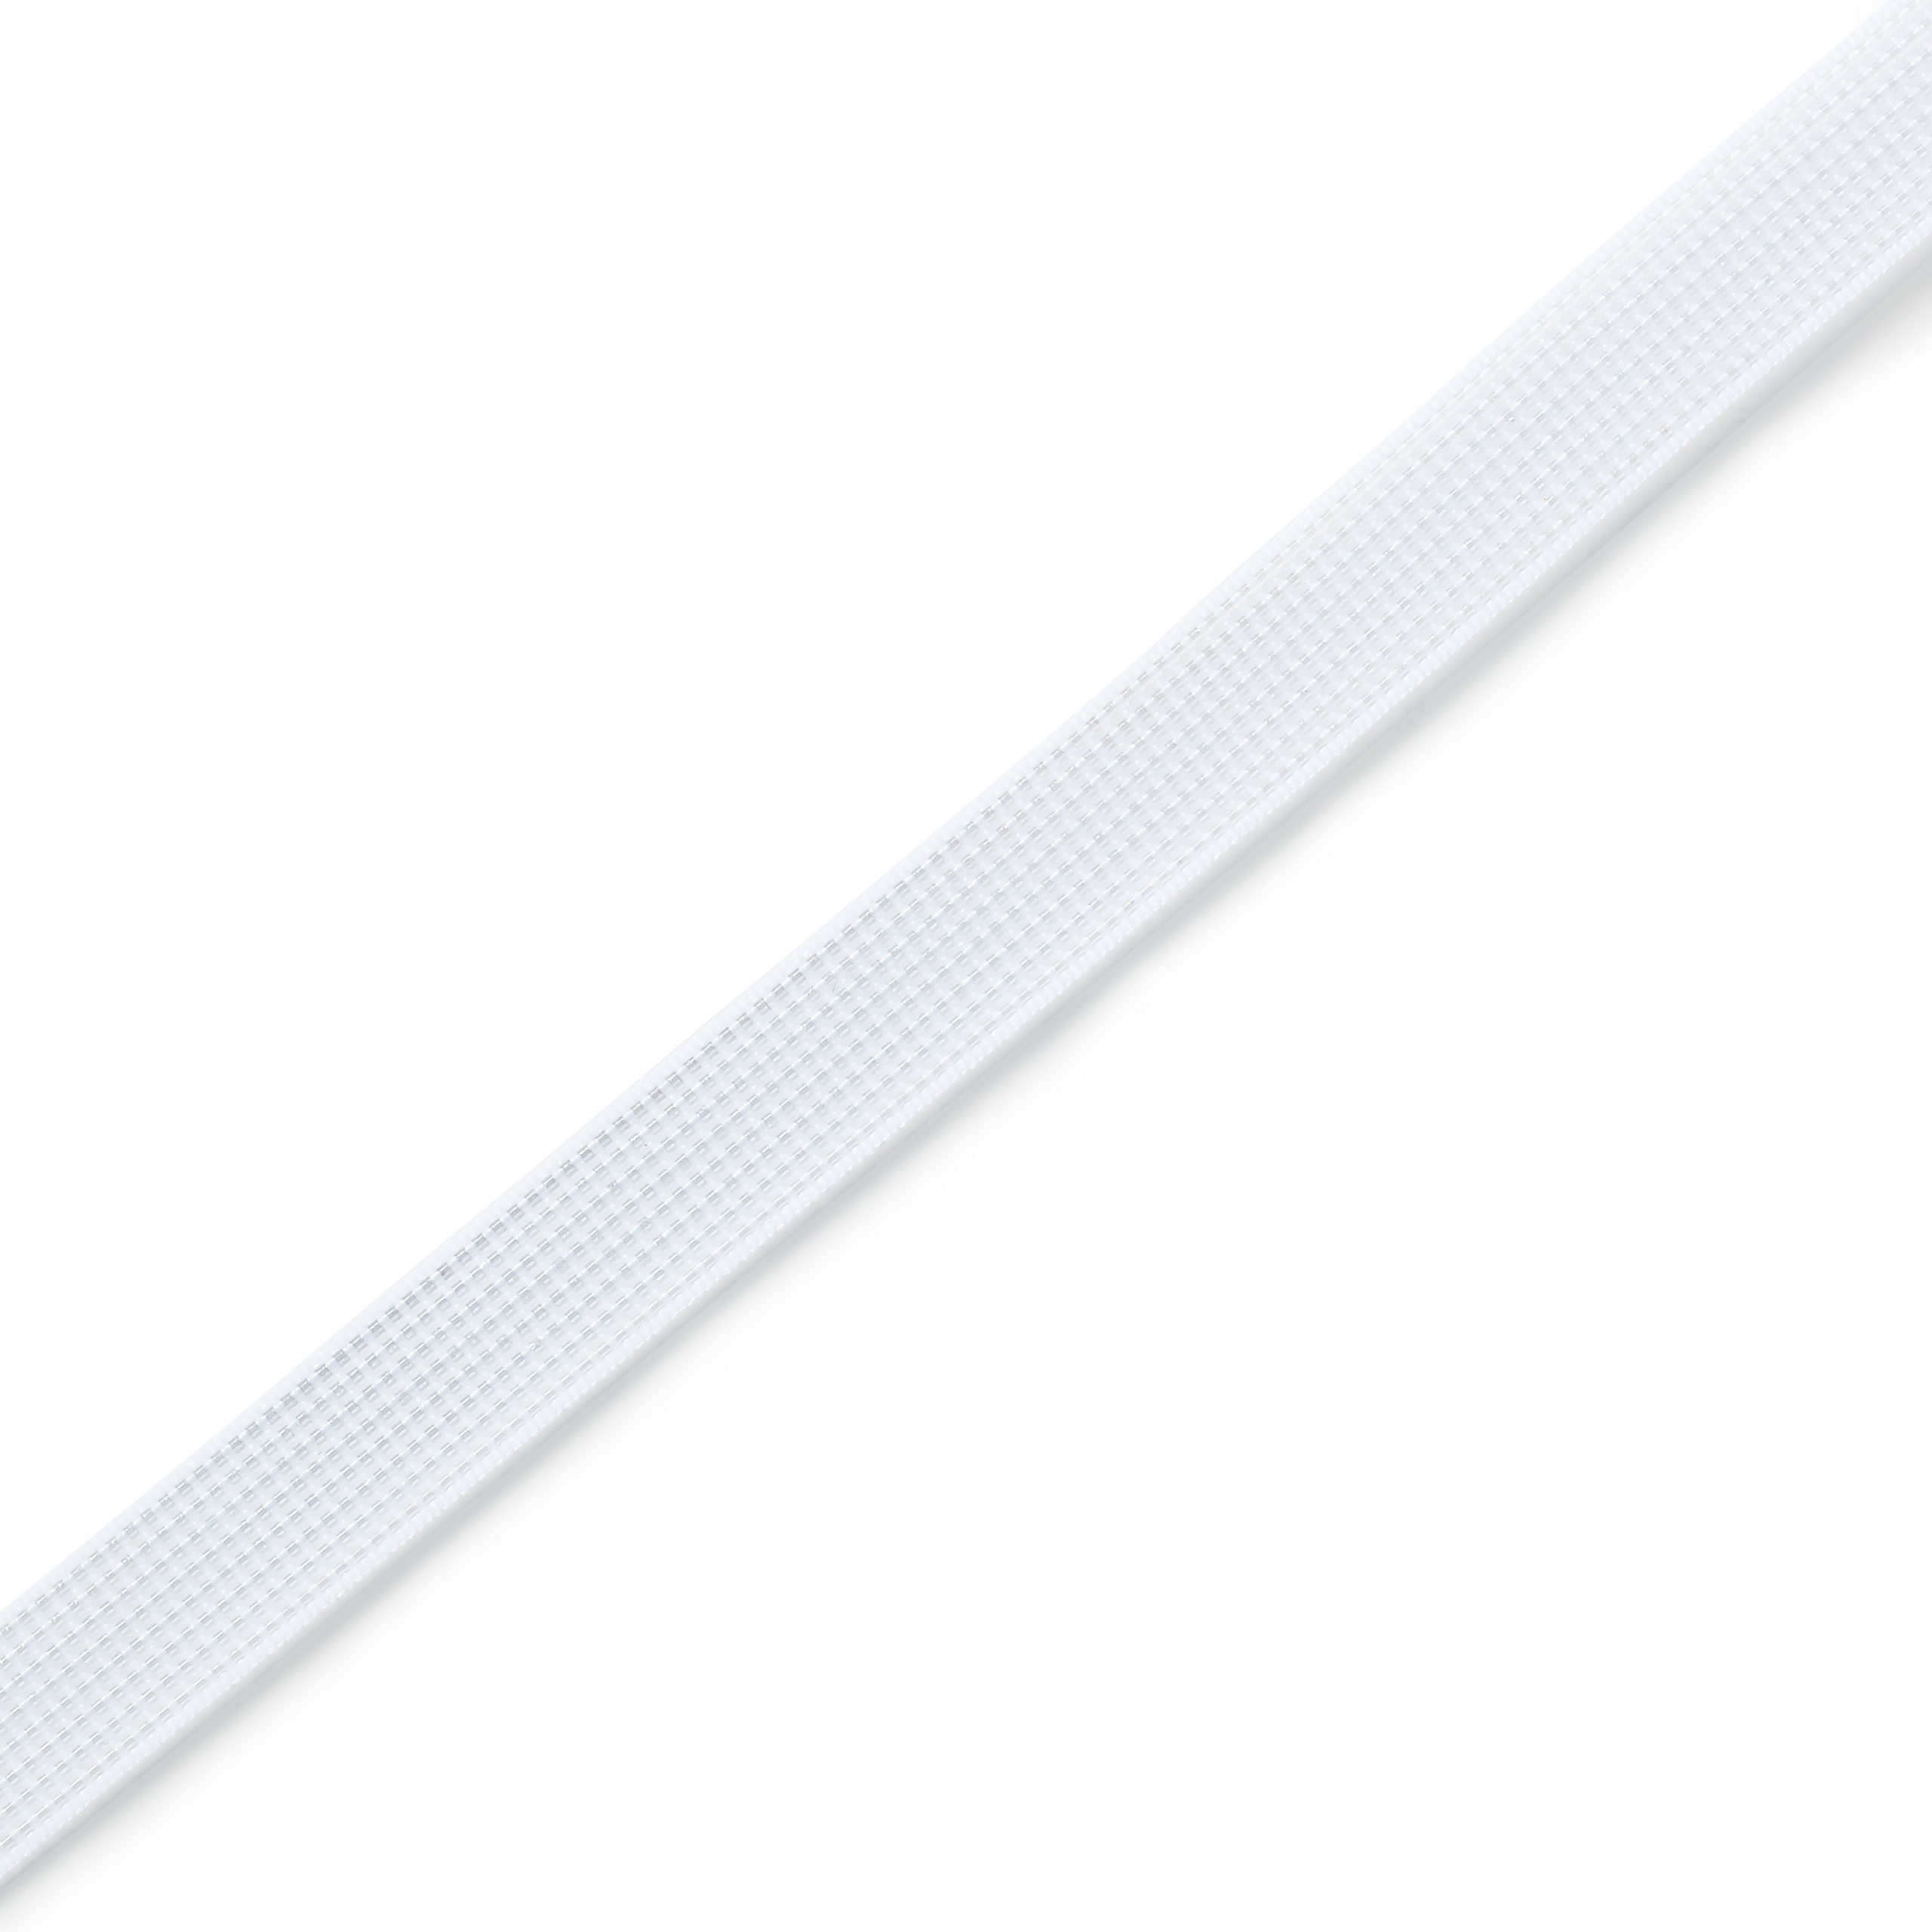 Stäbchenband 11 mm weiß, Meterware